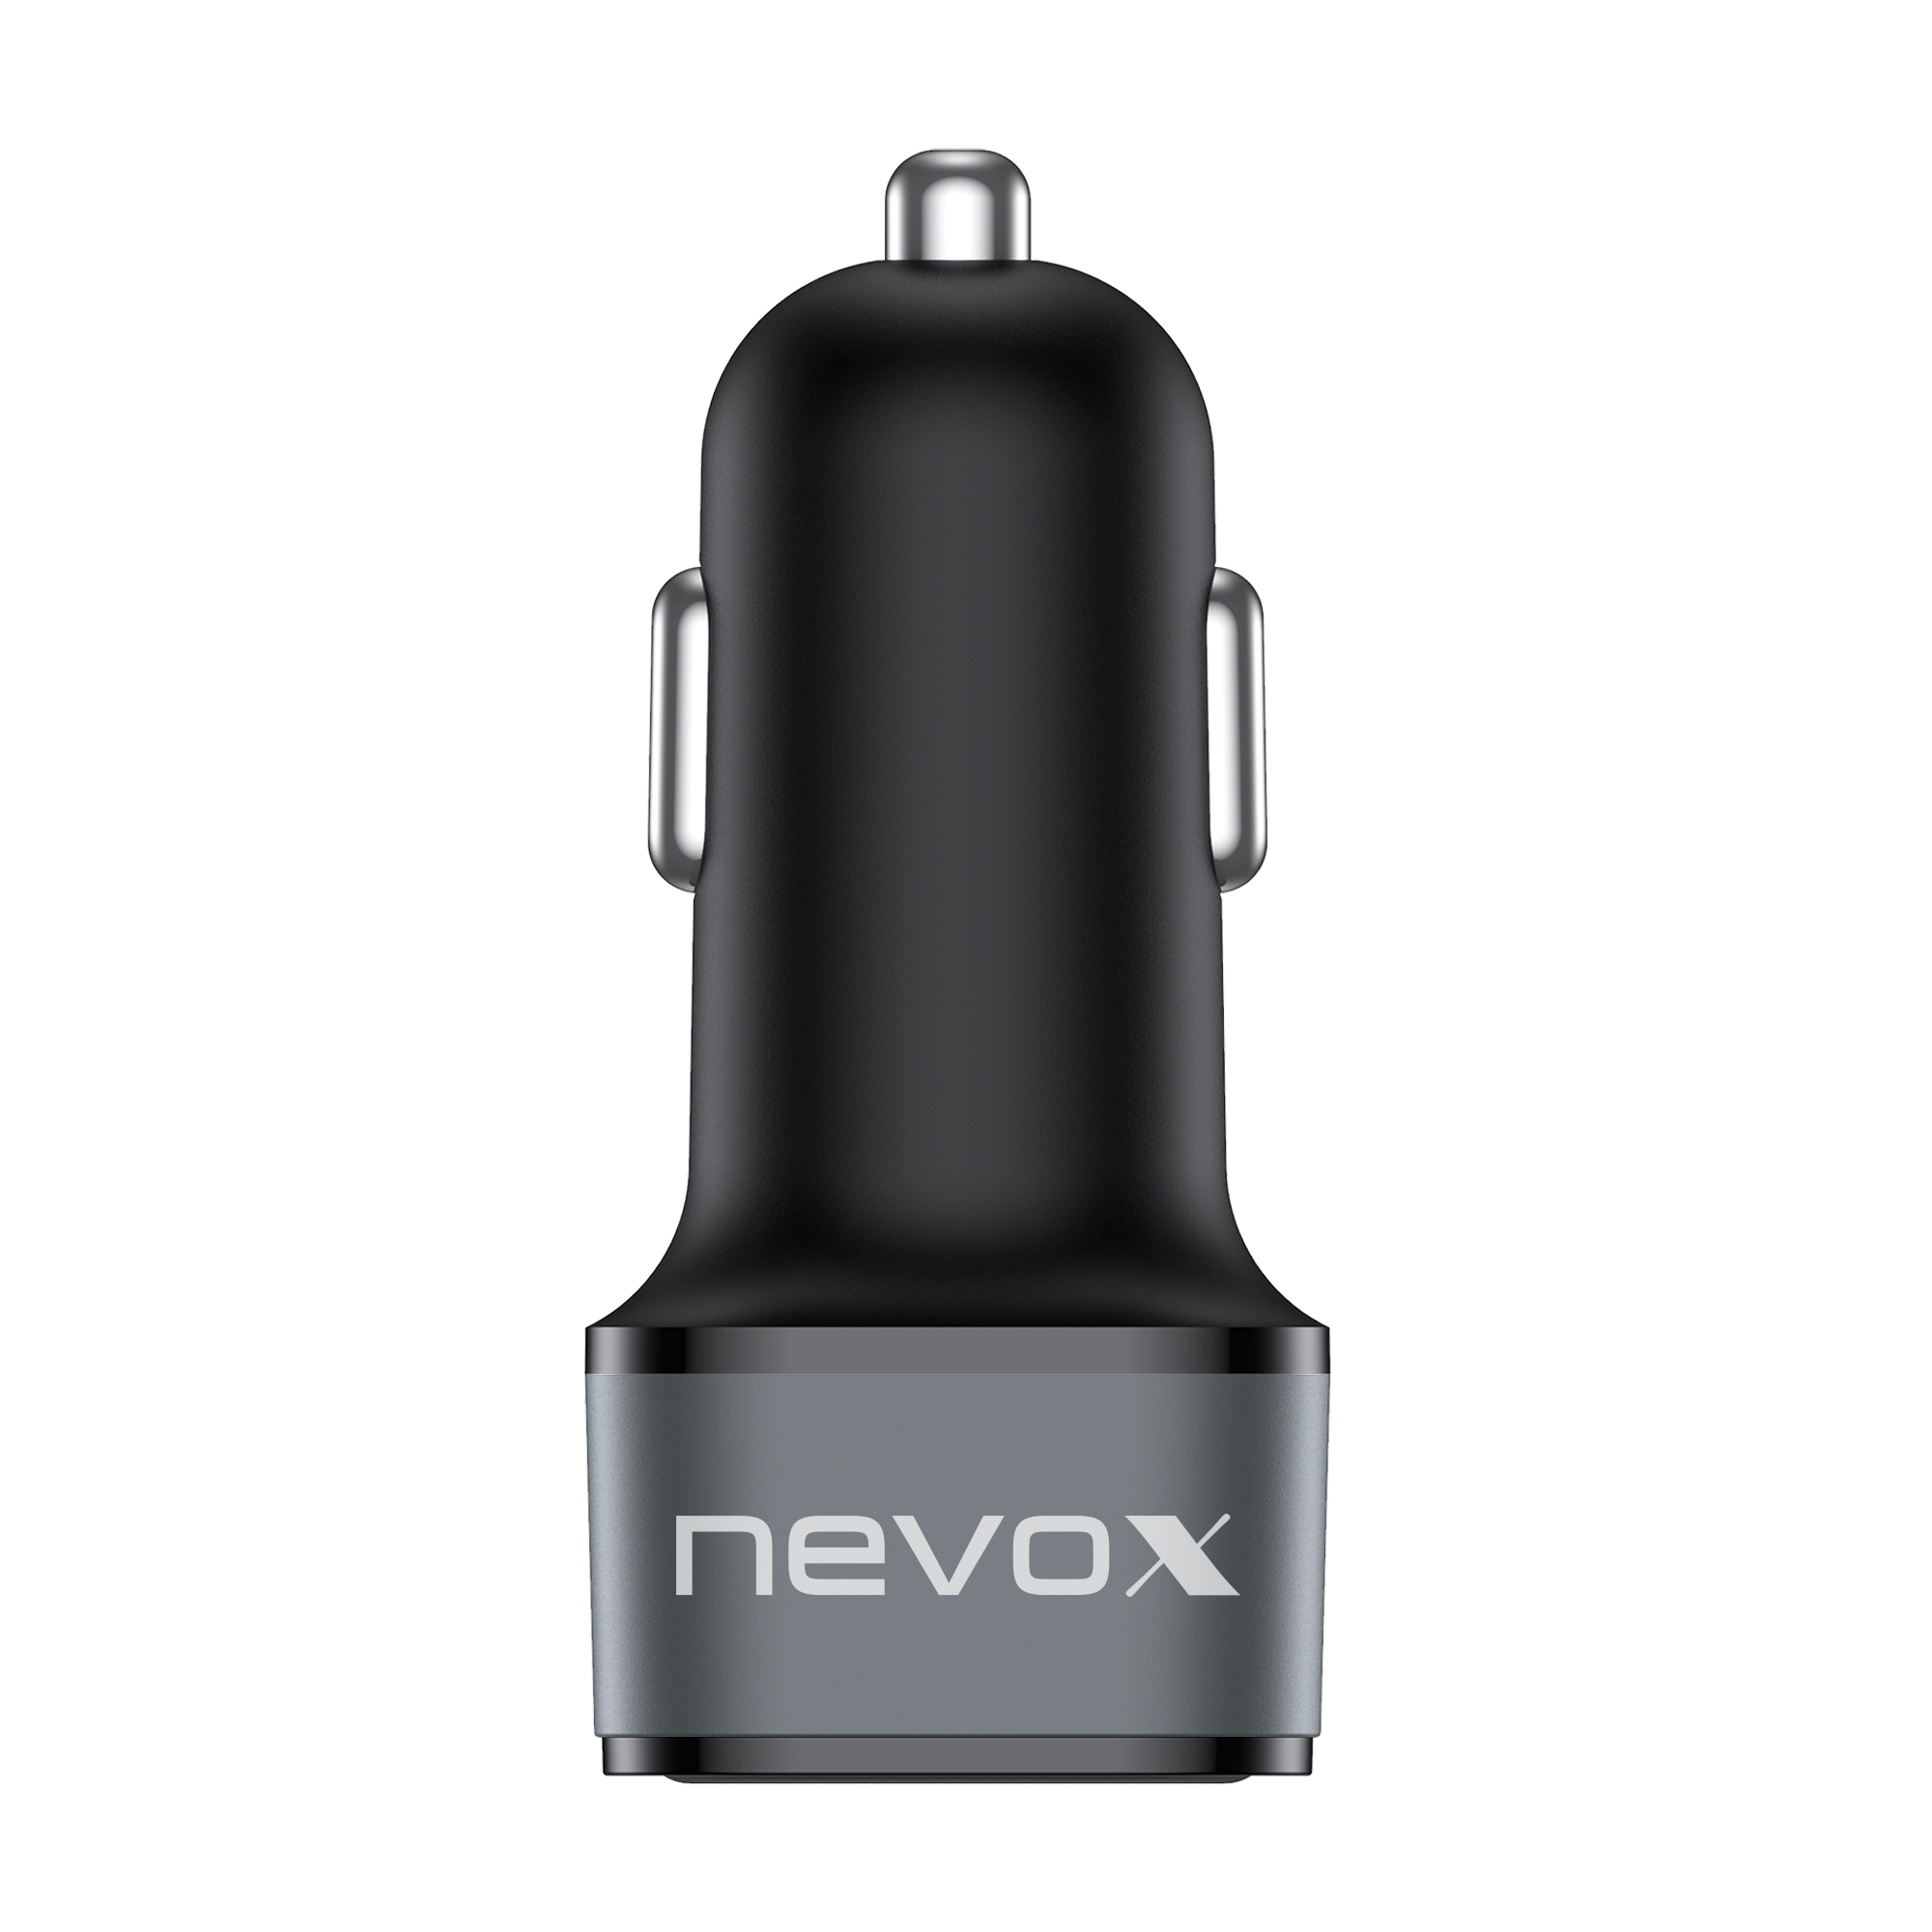 Networx magnetisches Qi-Kfz-Ladegerät, USB-C zu USB-A, schwarz